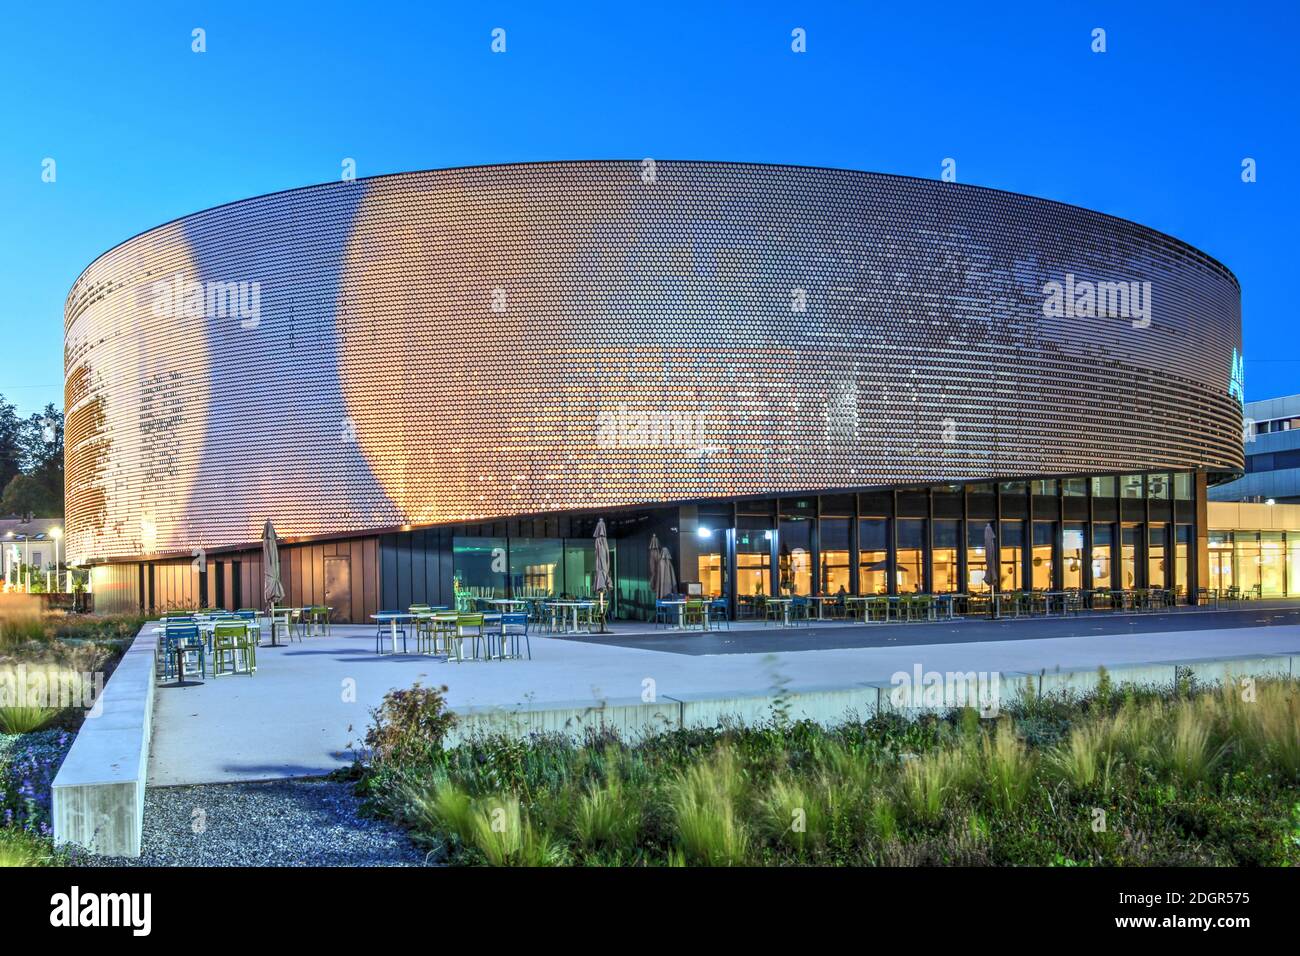 Lausanne, Schweiz - 12. September 2020 - Aquatis ist ein Aquarium - Vivarium, das sich der Artenvielfalt von Süßwasser widmet und 2017 in Lausanne, V, eröffnet wurde Stockfoto